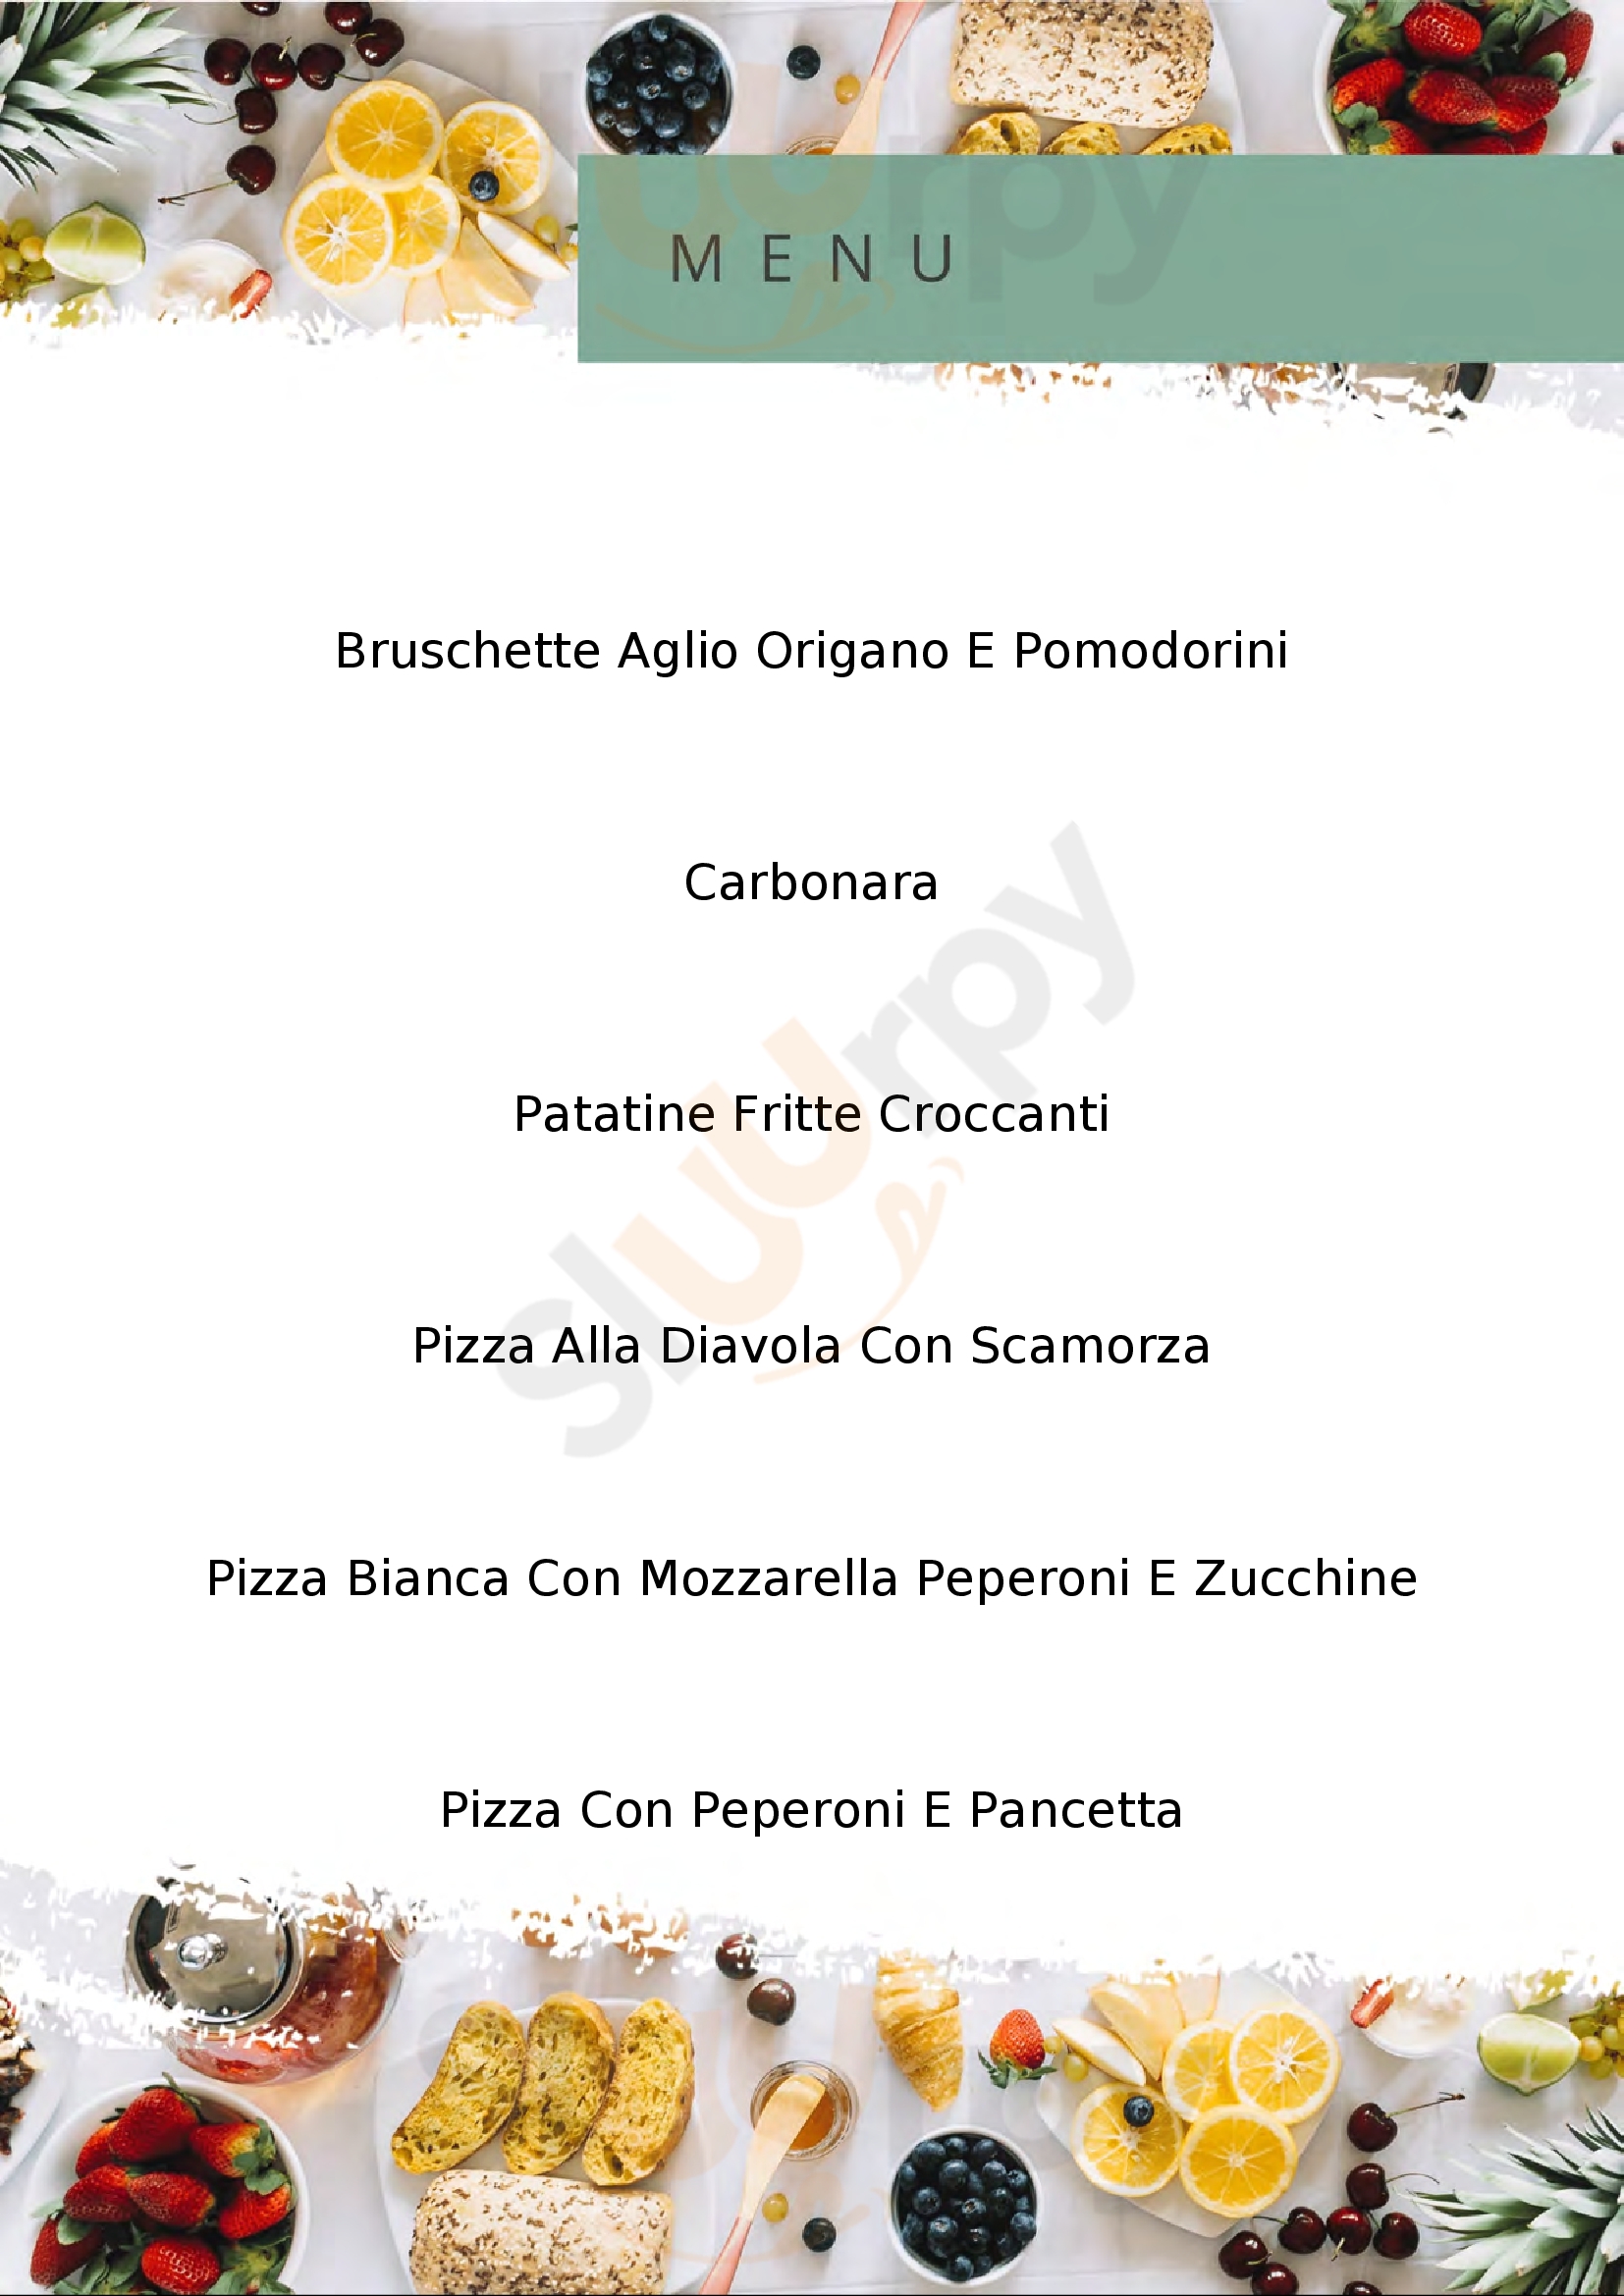 Pizzeria Diego Bergamo menù 1 pagina